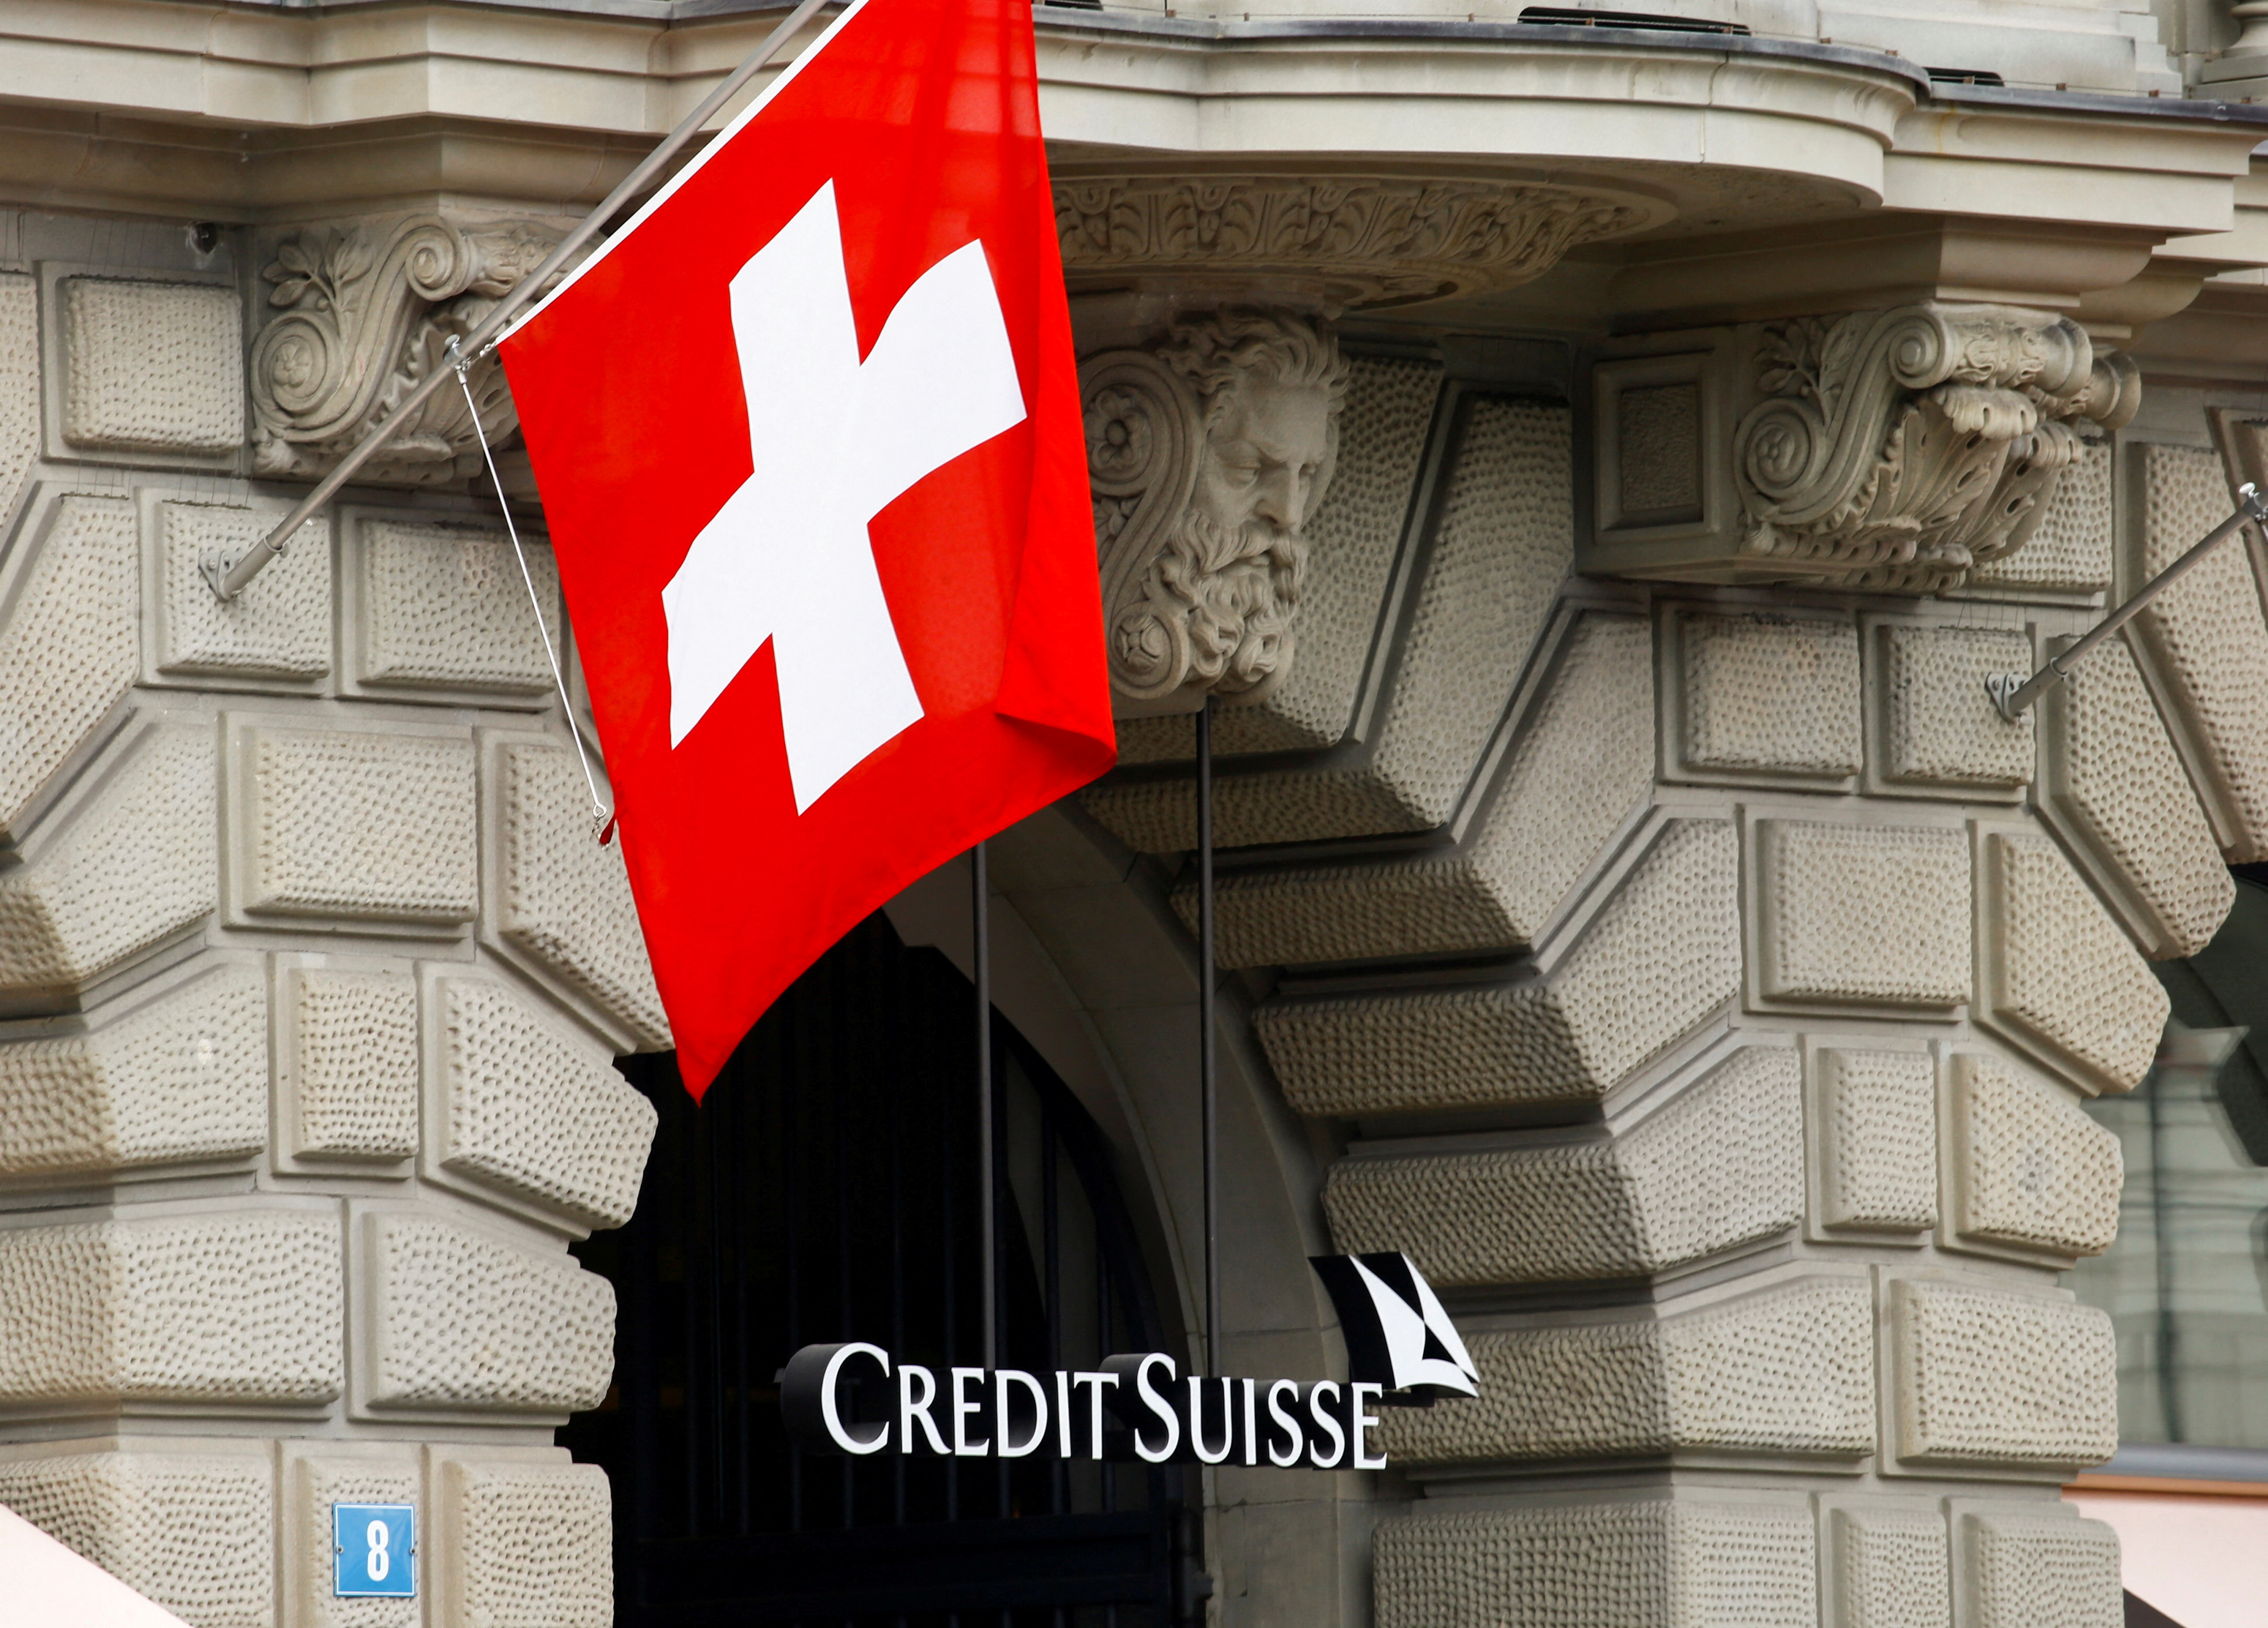 El Credit Suisse, con casa central en Suiza, fue el banco elegido por el    rey de Jordania para llevar su dinero (REUTERS/Arnd Wiegmann/File Photo)